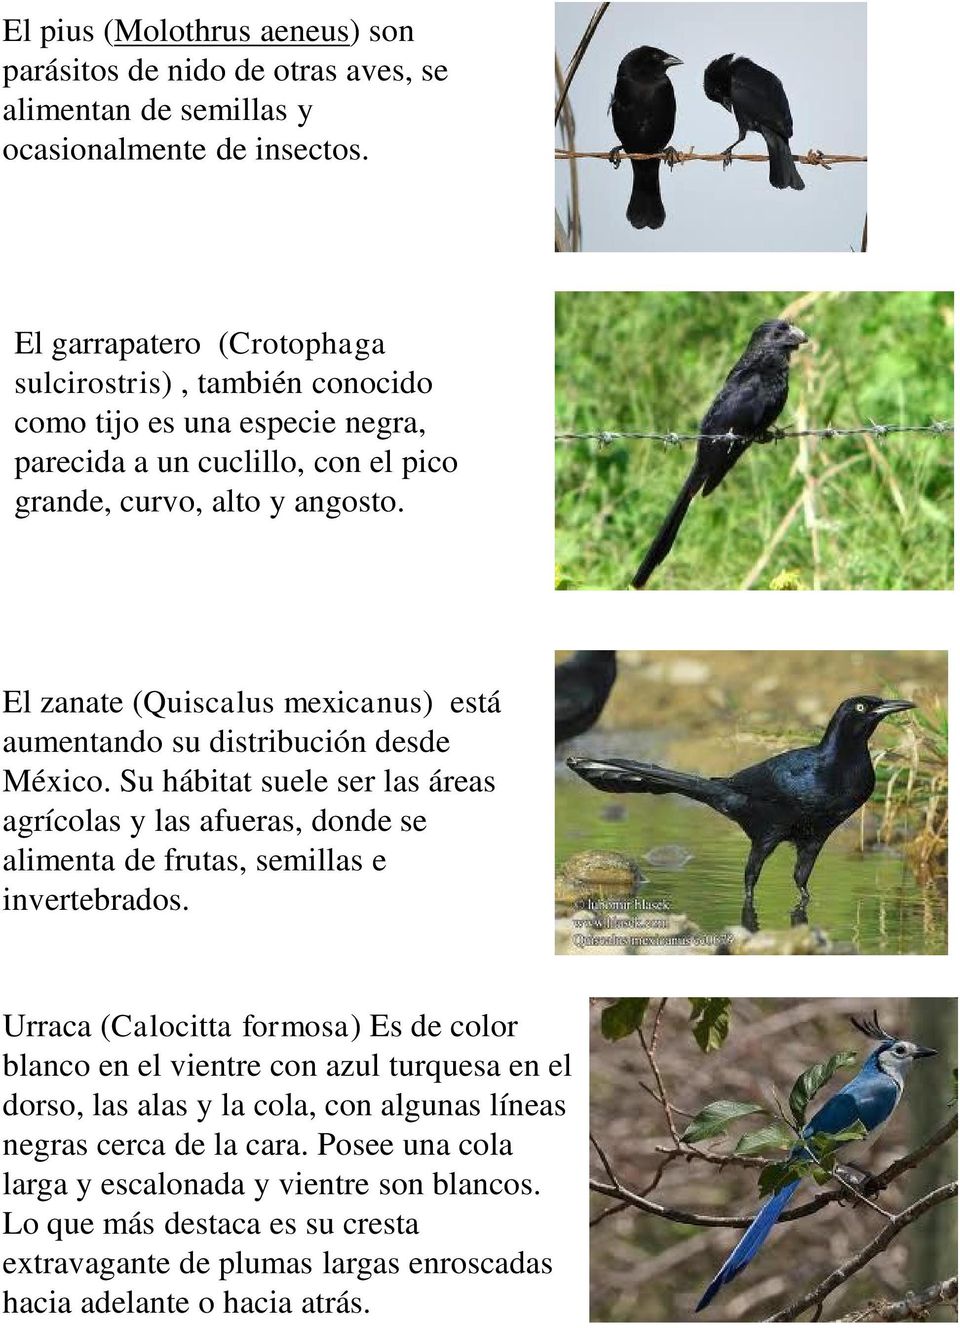 El zanate (Quiscalus mexicanus) está aumentando su distribución desde México. Su hábitat suele ser las áreas agrícolas y las afueras, donde se alimenta de frutas, semillas e invertebrados.